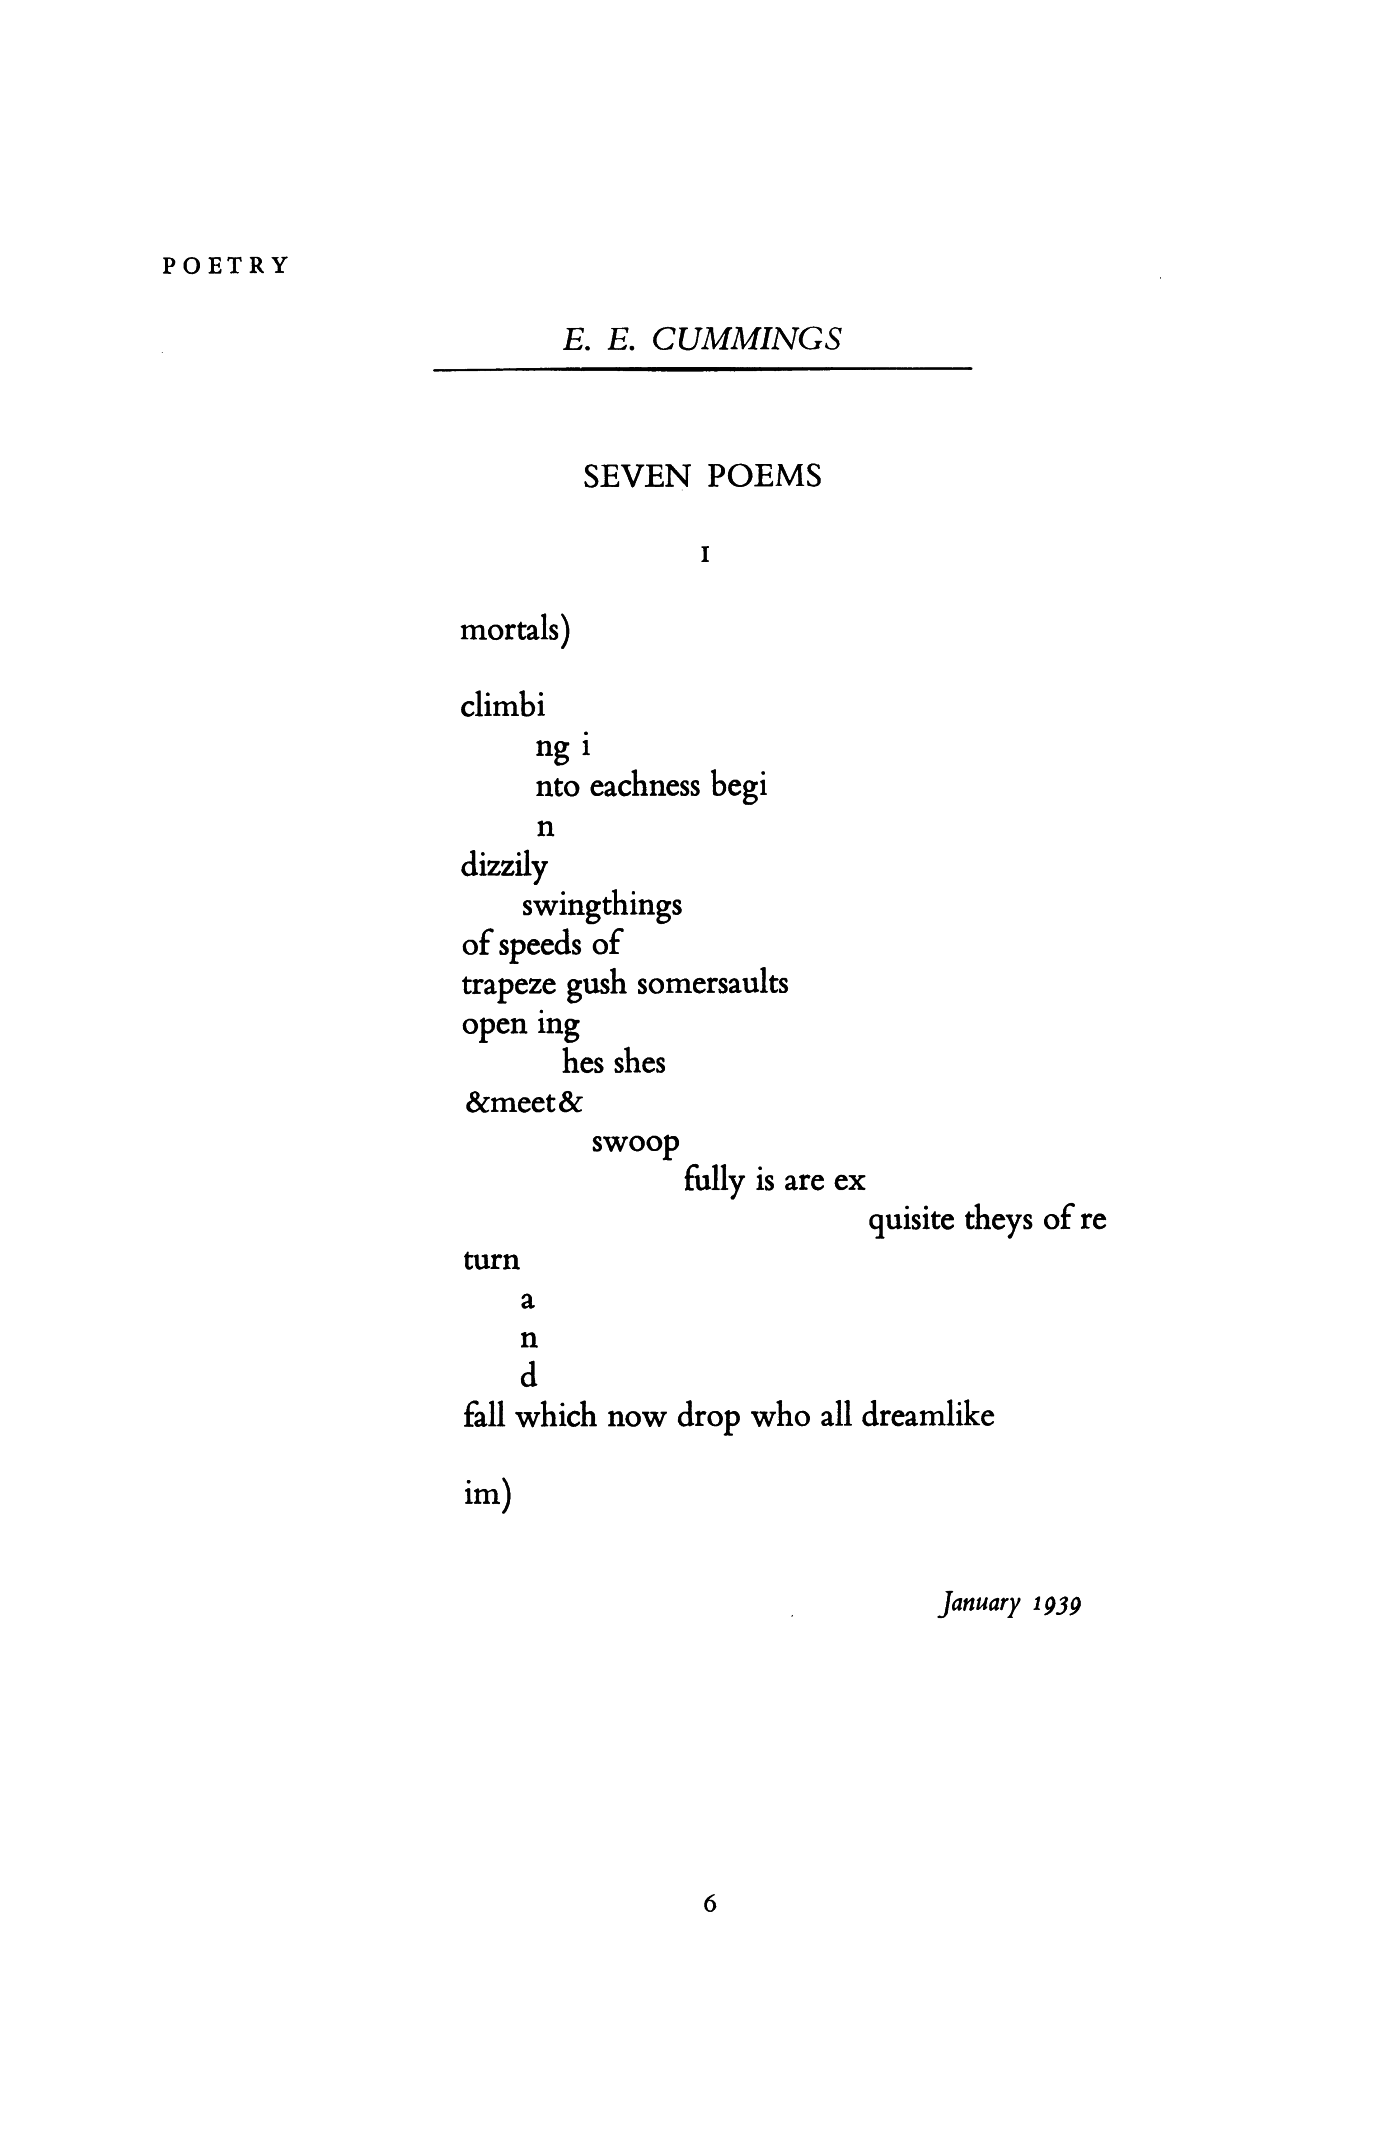 ee cummins poem